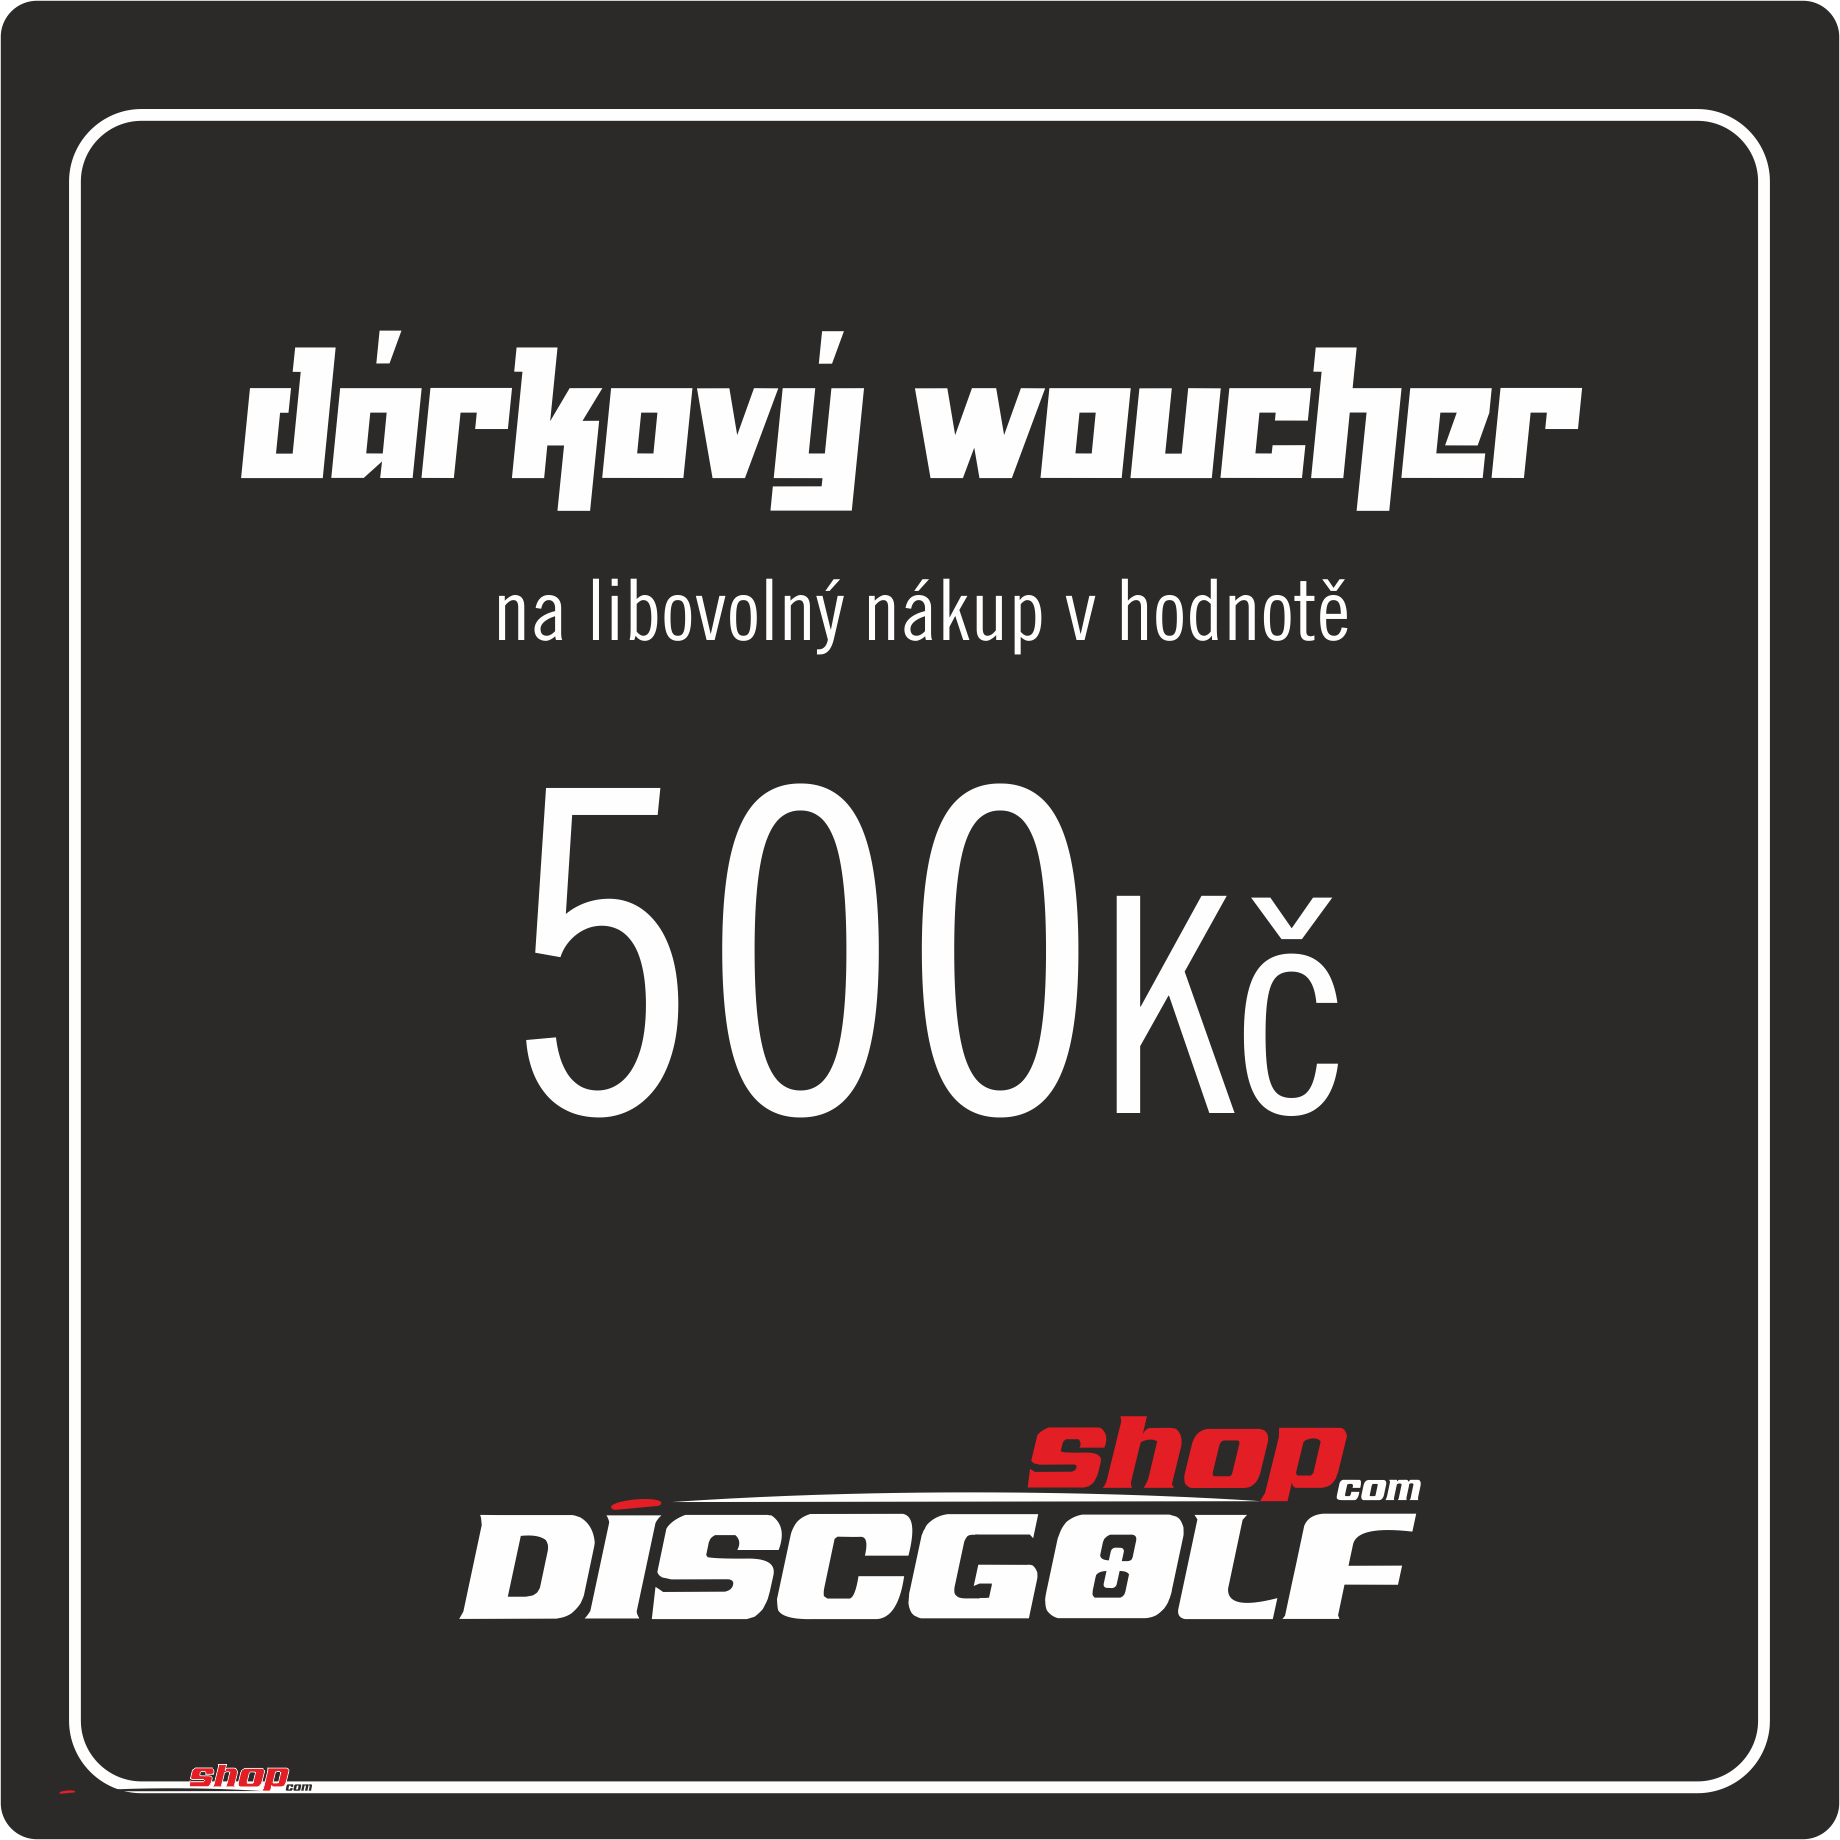 Dárkový woucher - kupon 500Kč (discgolf)